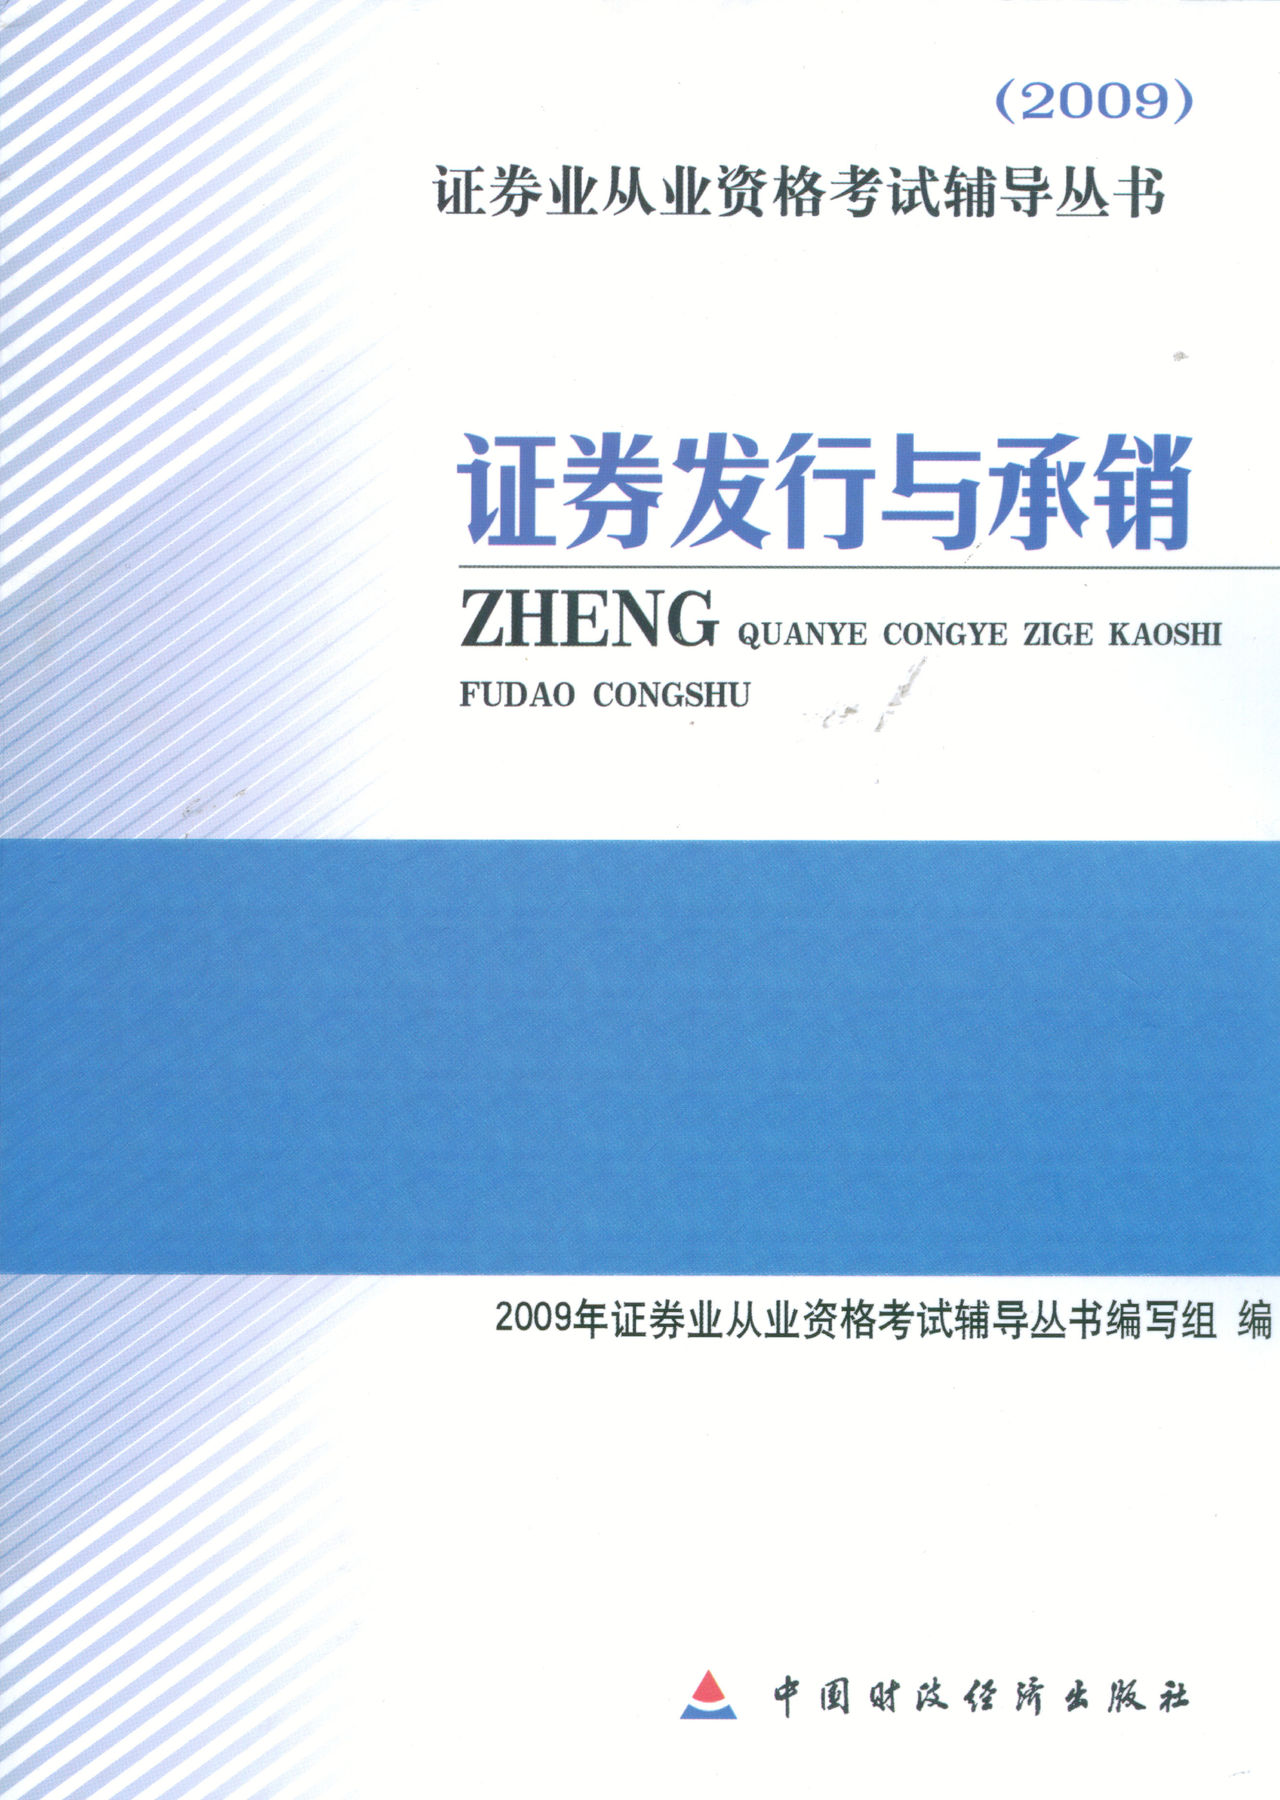 證券發行與承銷(2009年中國財政經濟出版社出版的圖書)